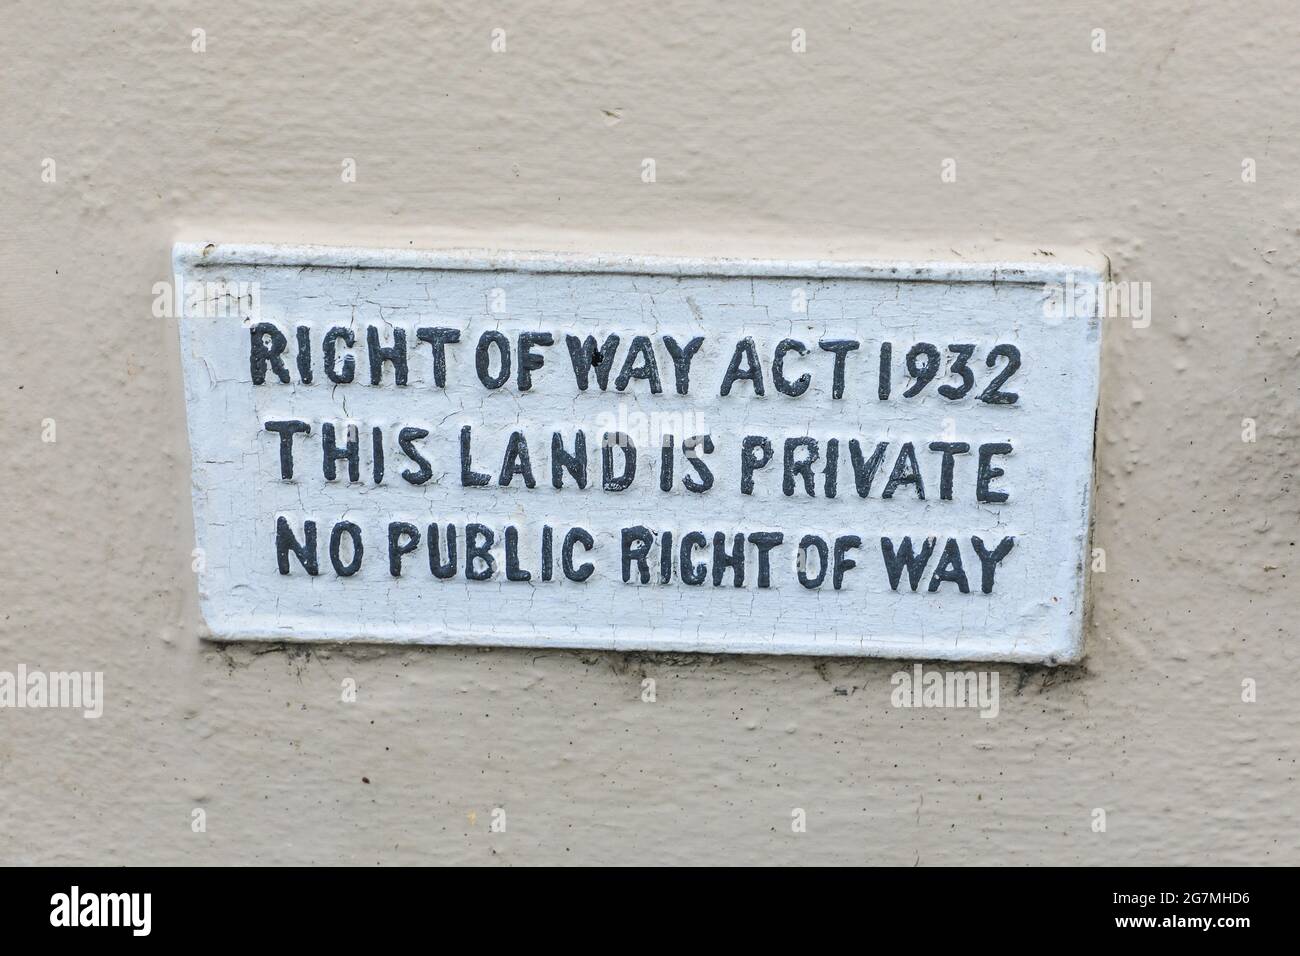 Un panneau sur un mur disant «droit de passage Act 1932 cette terre est privée aucun droit de passage public», Angleterre, Royaume-Uni Banque D'Images